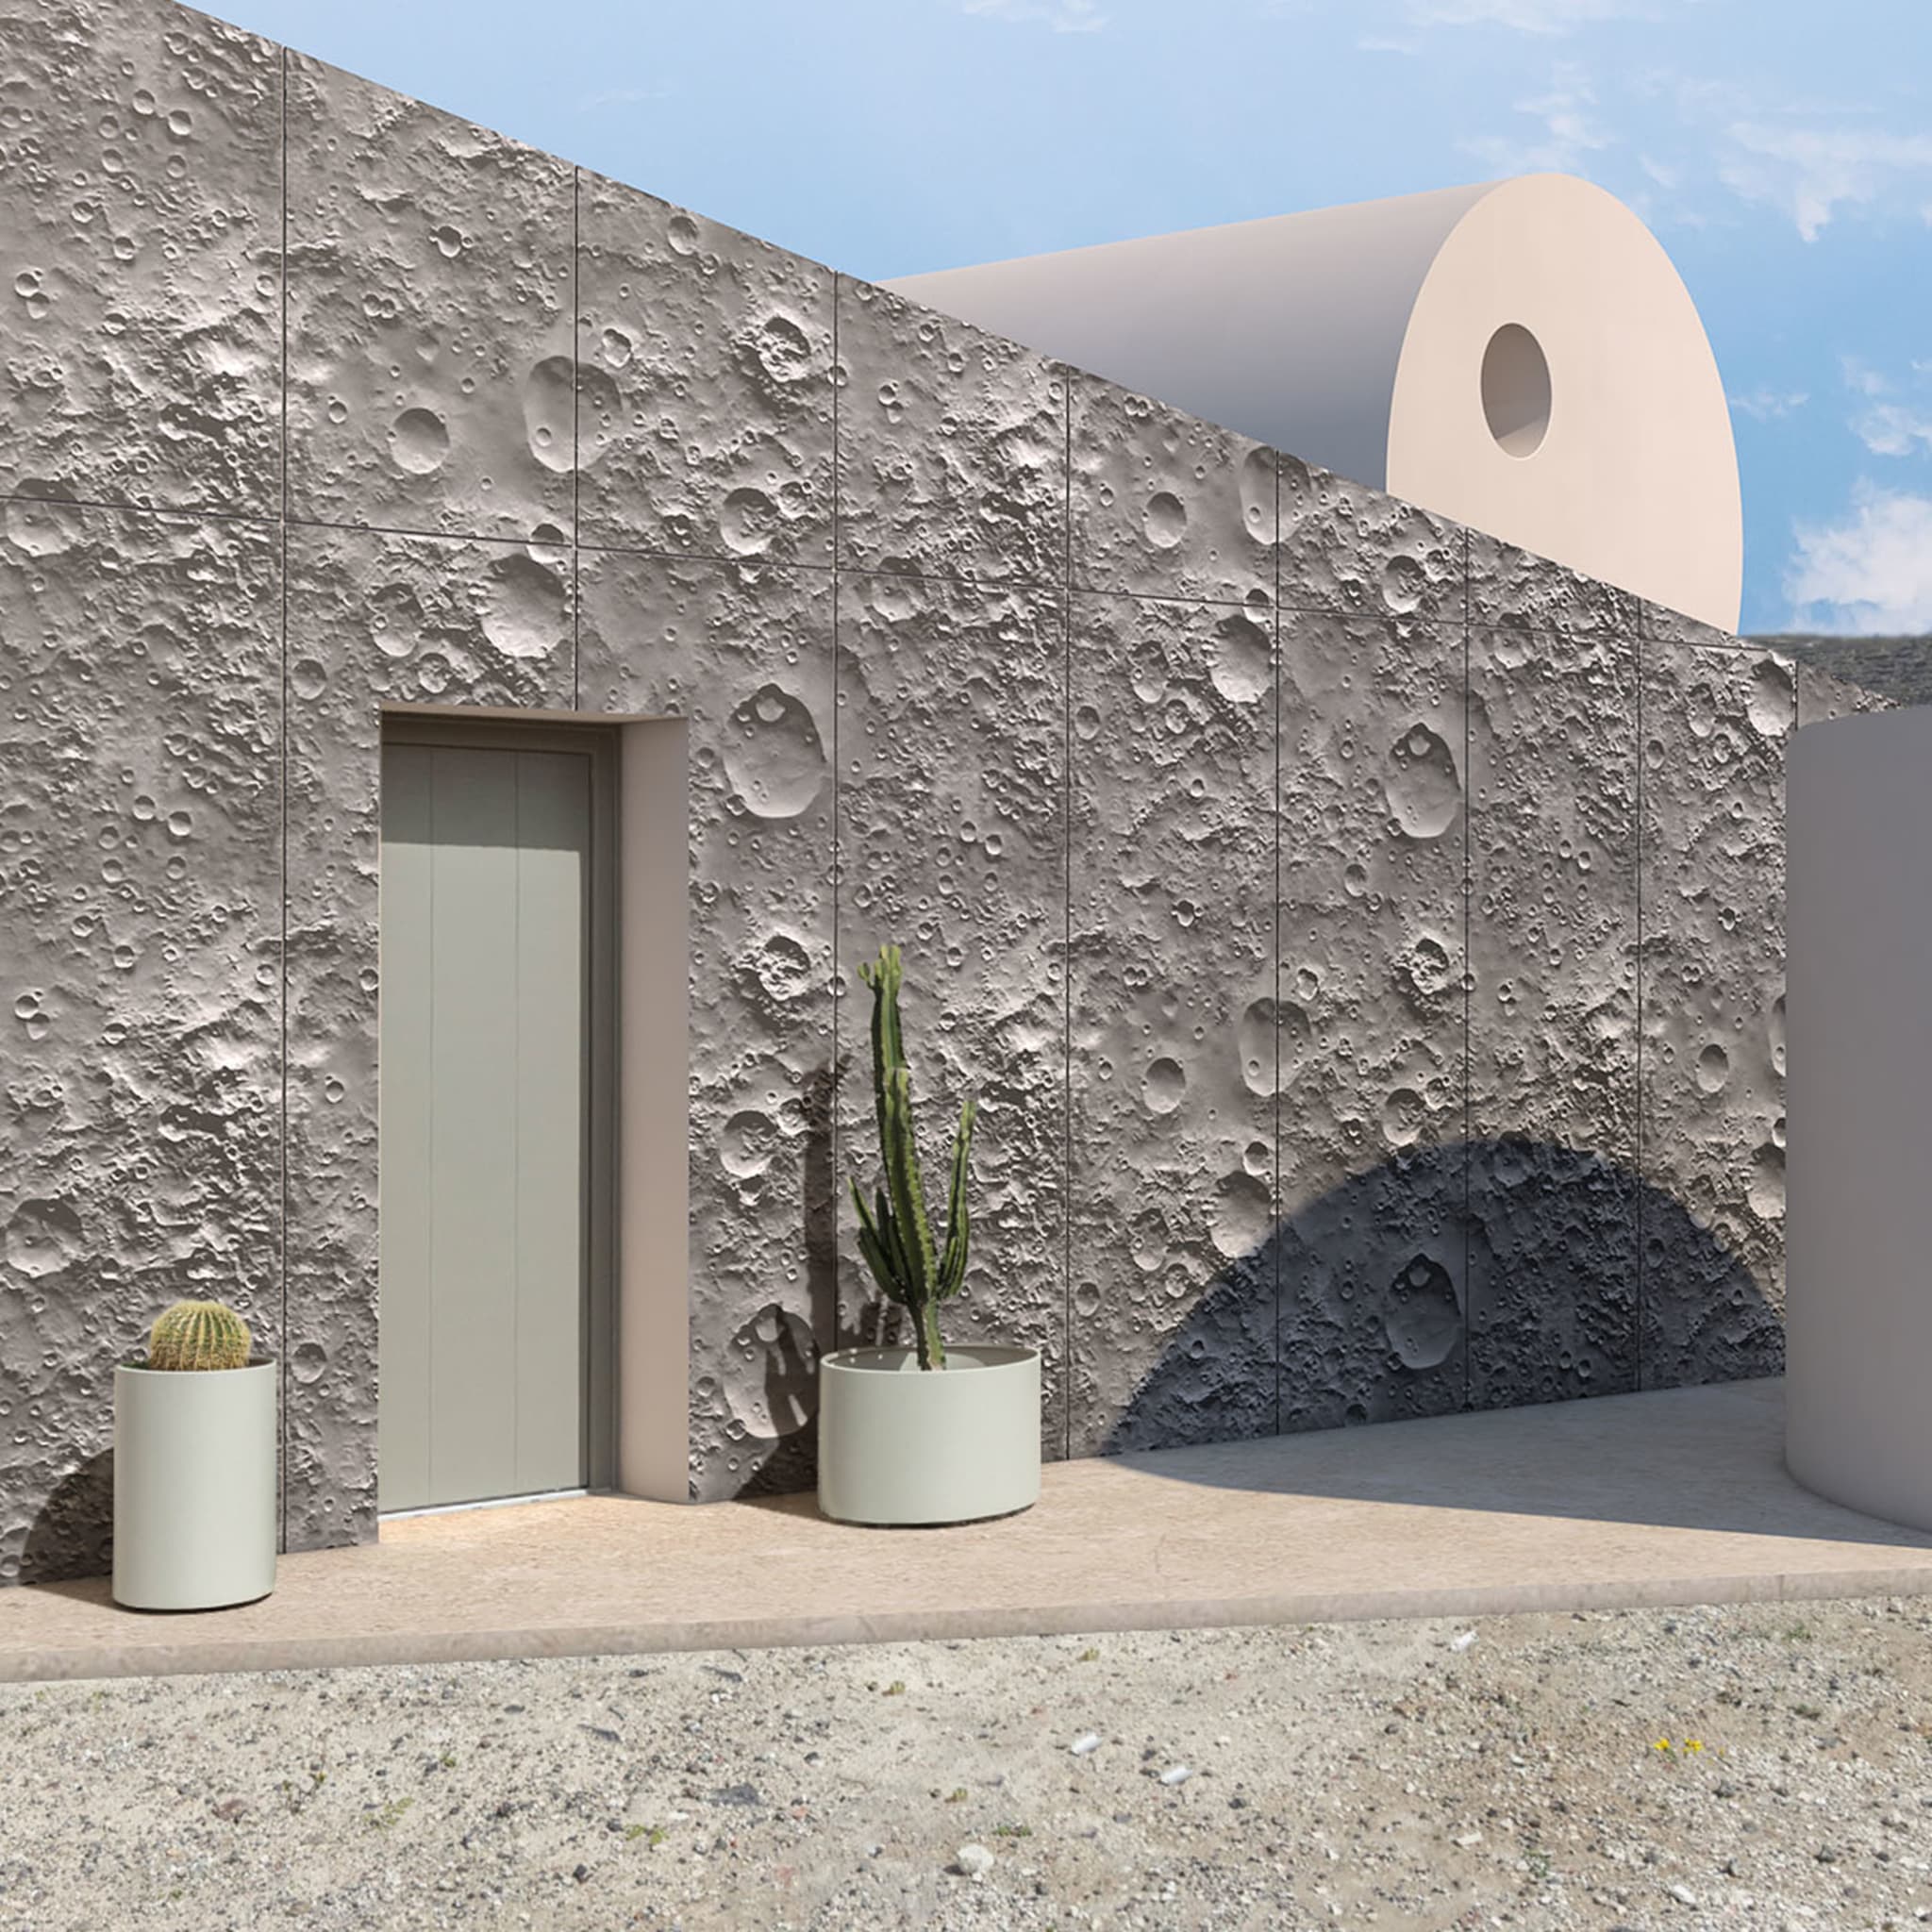 17 Moon Outdoor Wallpaper - Alternative view 1